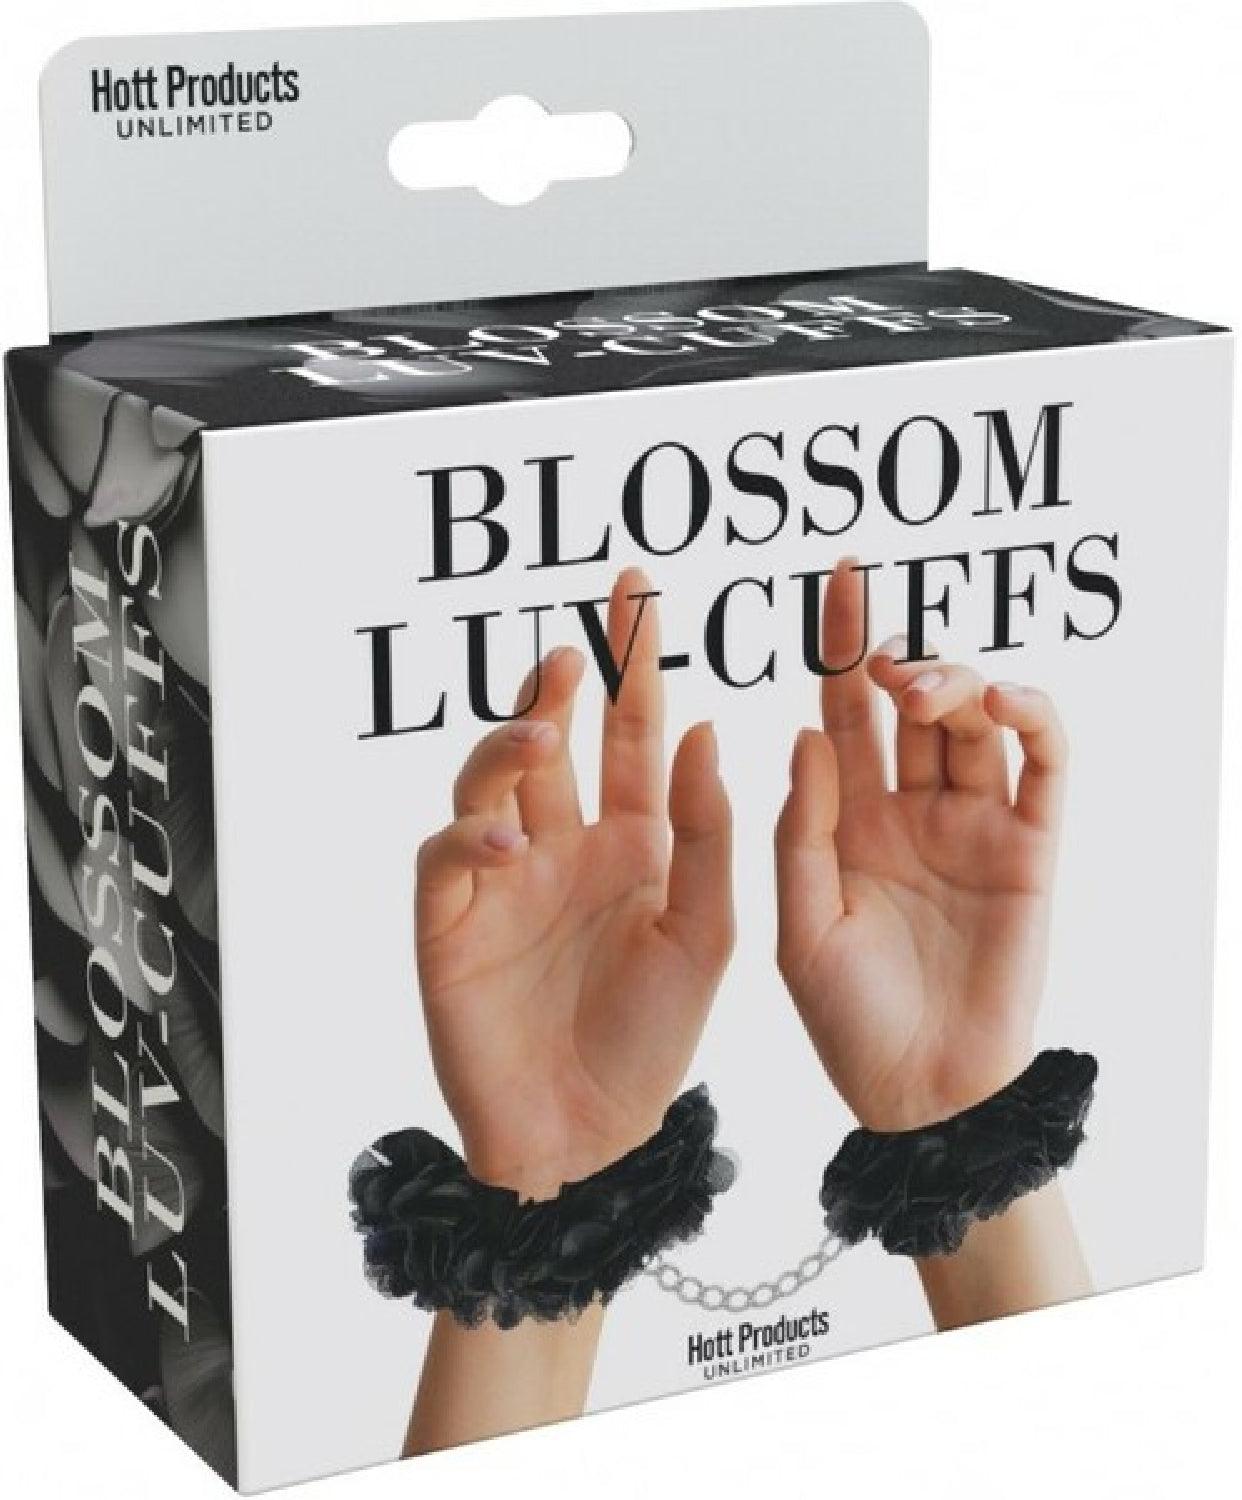 Blossom Luv Cuffs - Take A Peek